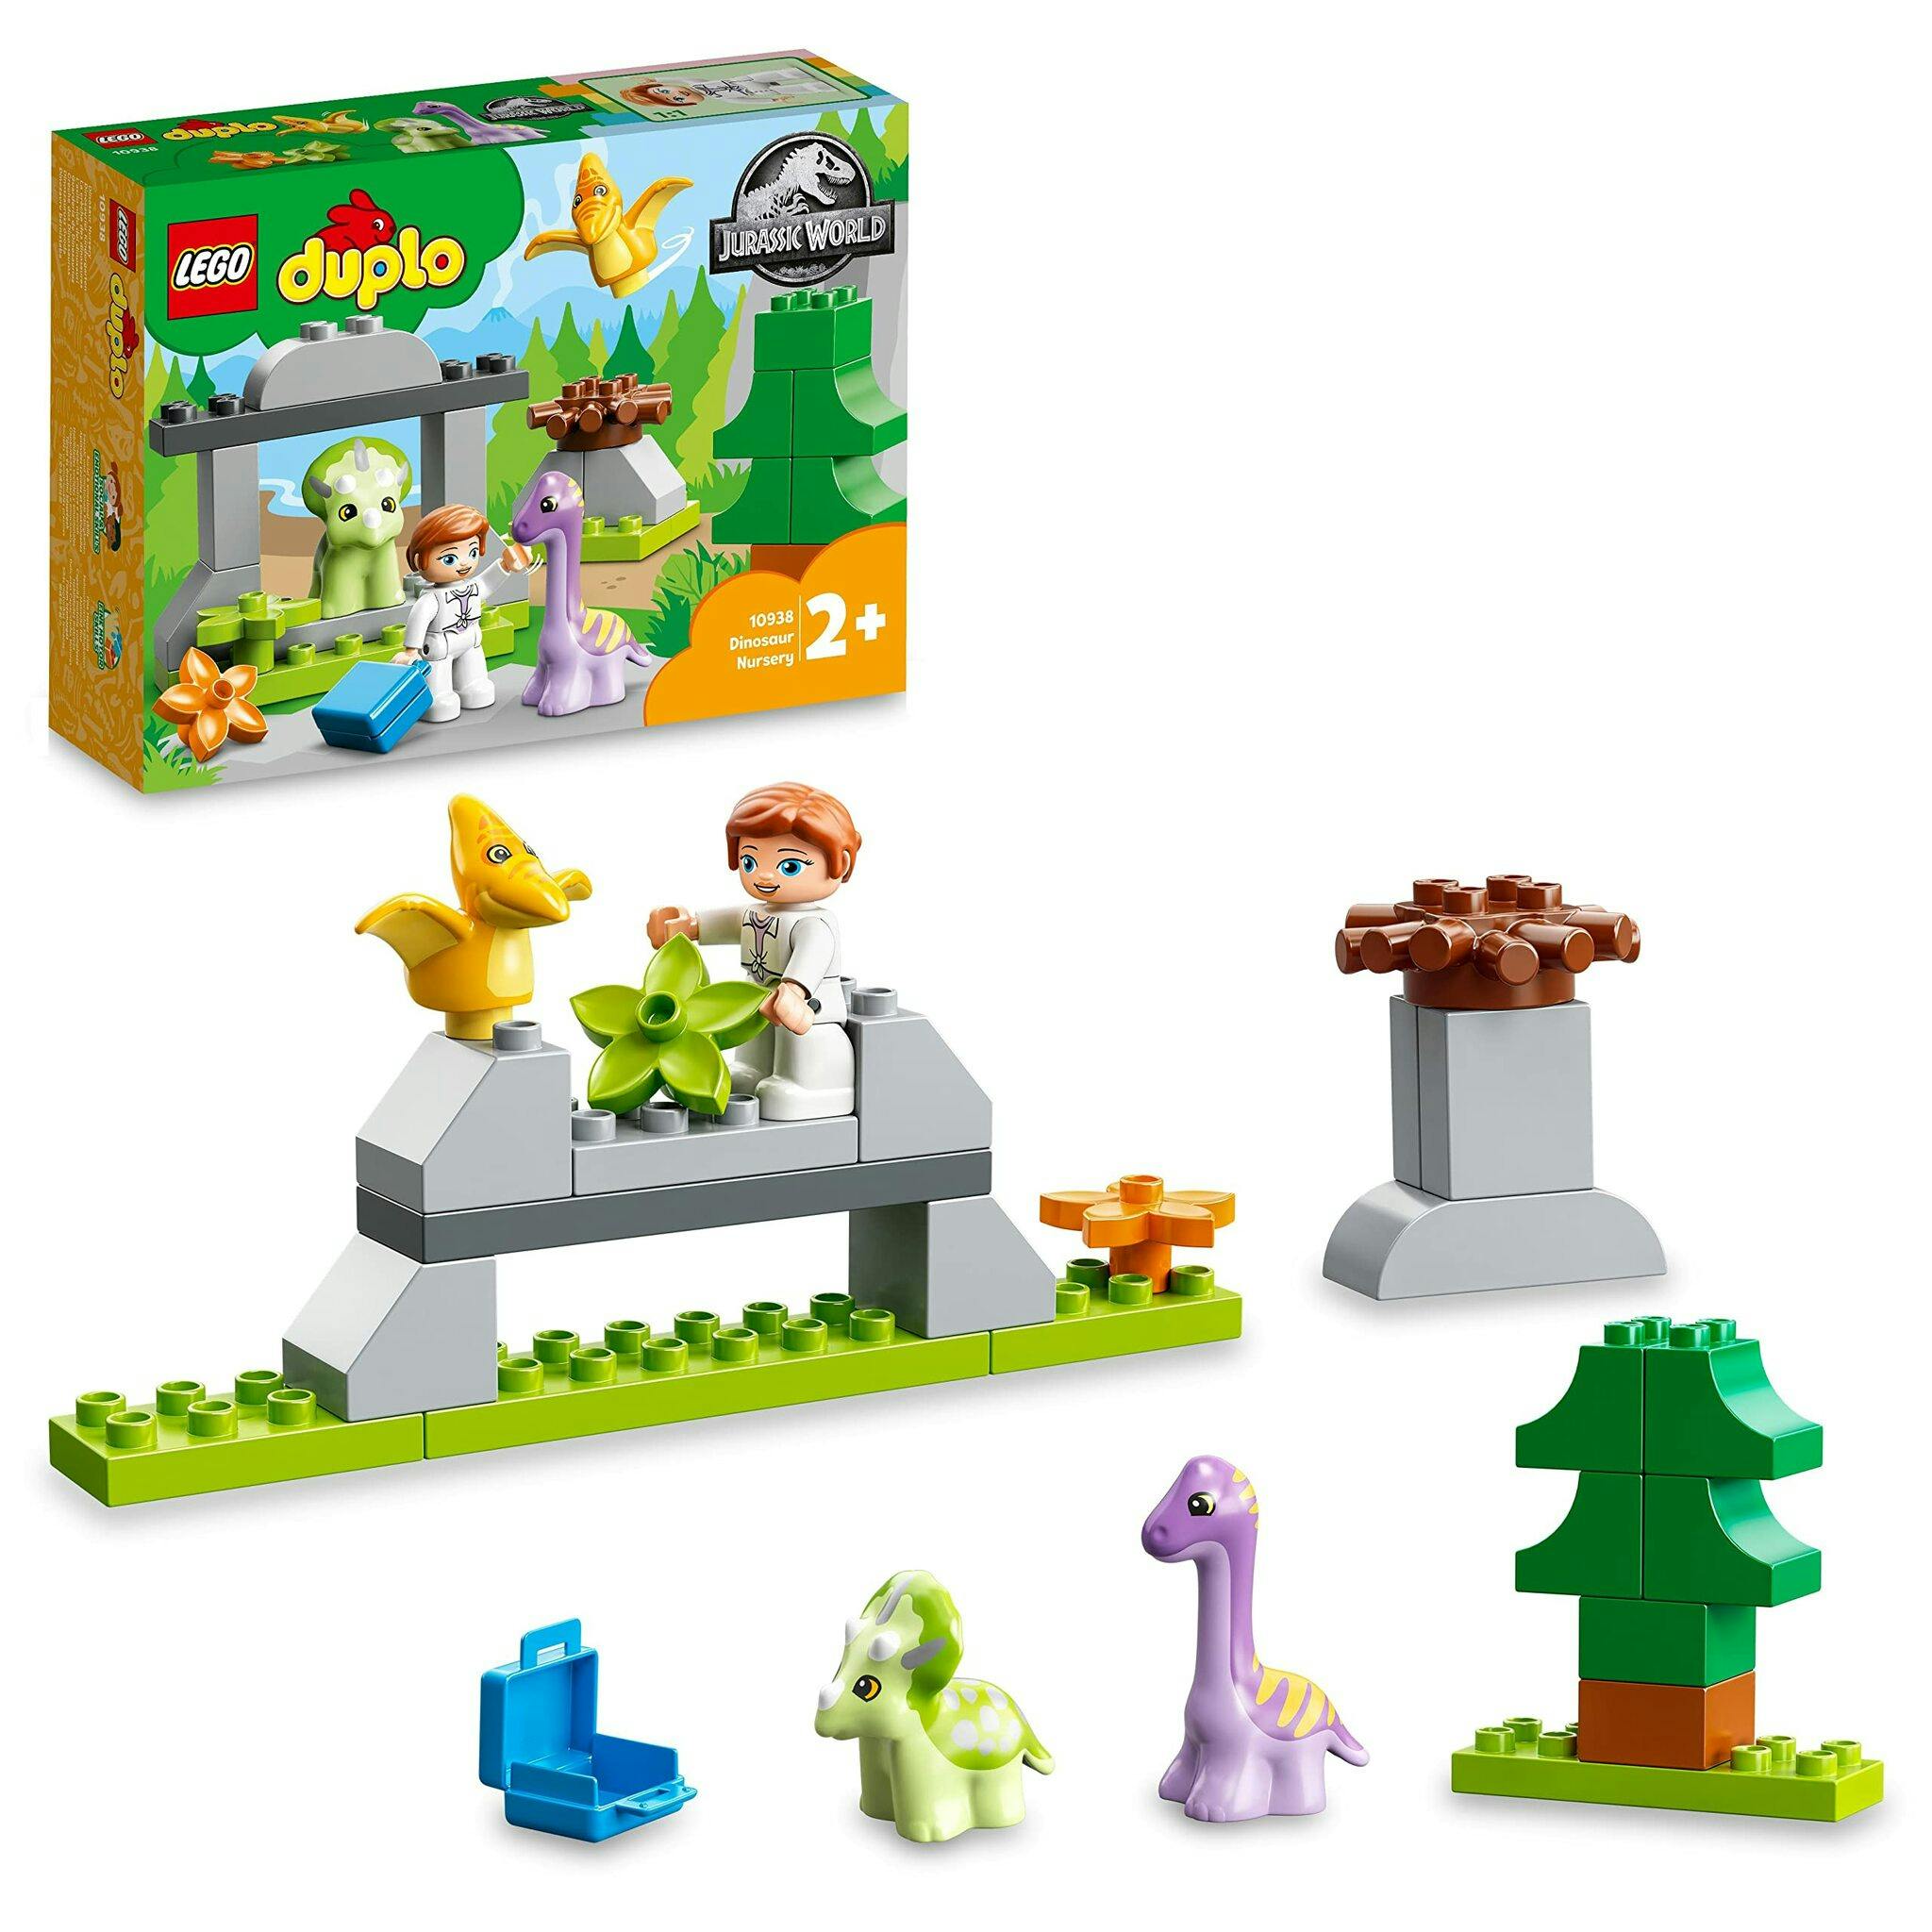 LEGO DUPLO Jurassic World Dinosauriedagis Set,10938 - På LeksakerPlus.se -  hittar du leksaker till alla barn små som stora.